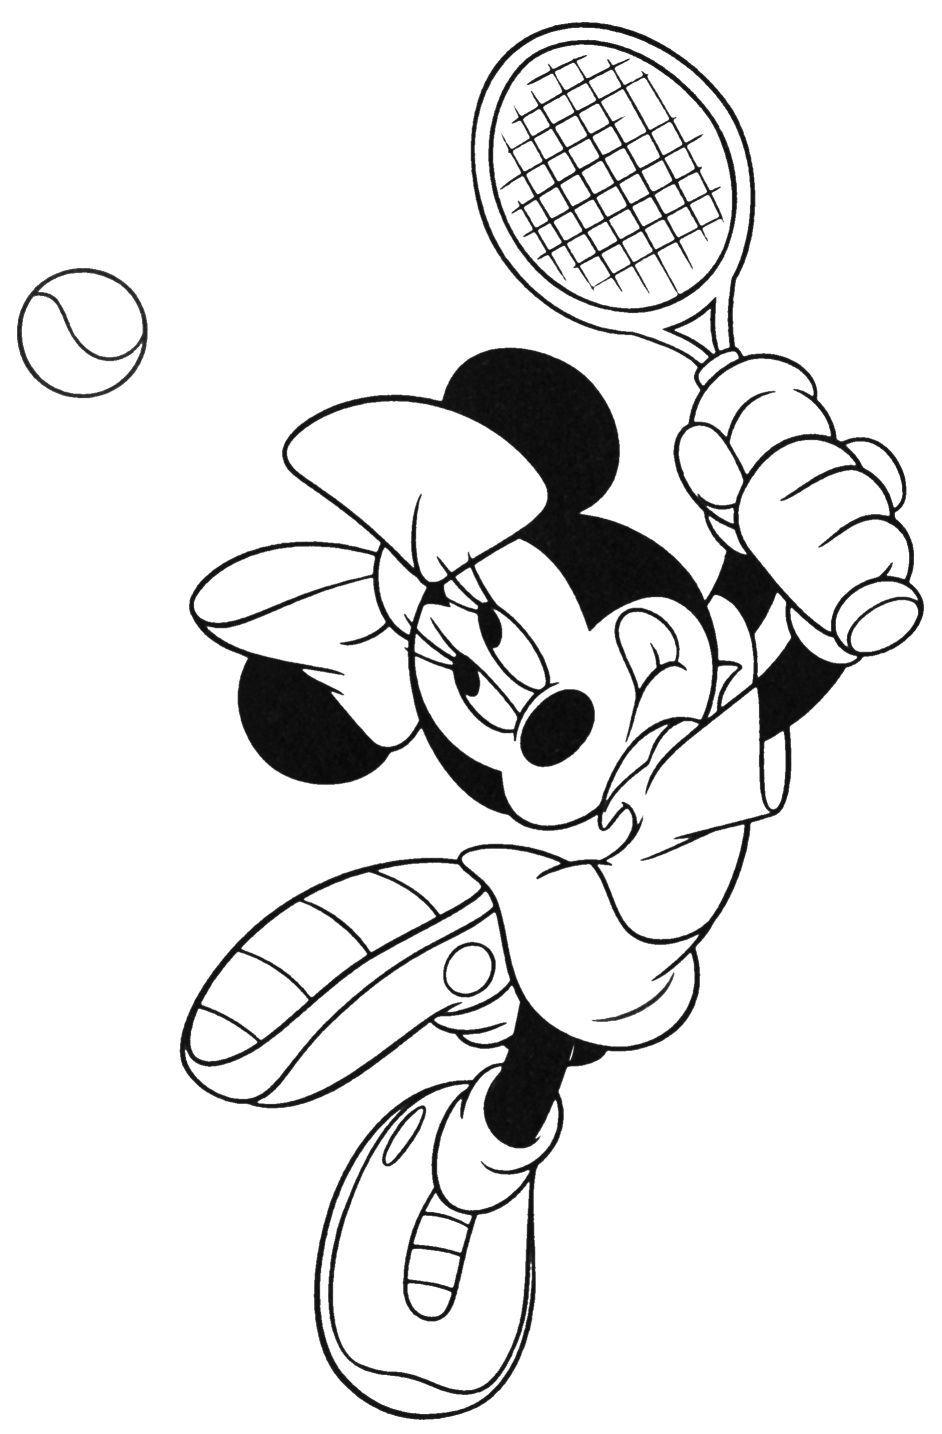 Mimi juega al tenis 2 dibujos para colorear - Mimi juega al tenis 2 dibujos para colorear